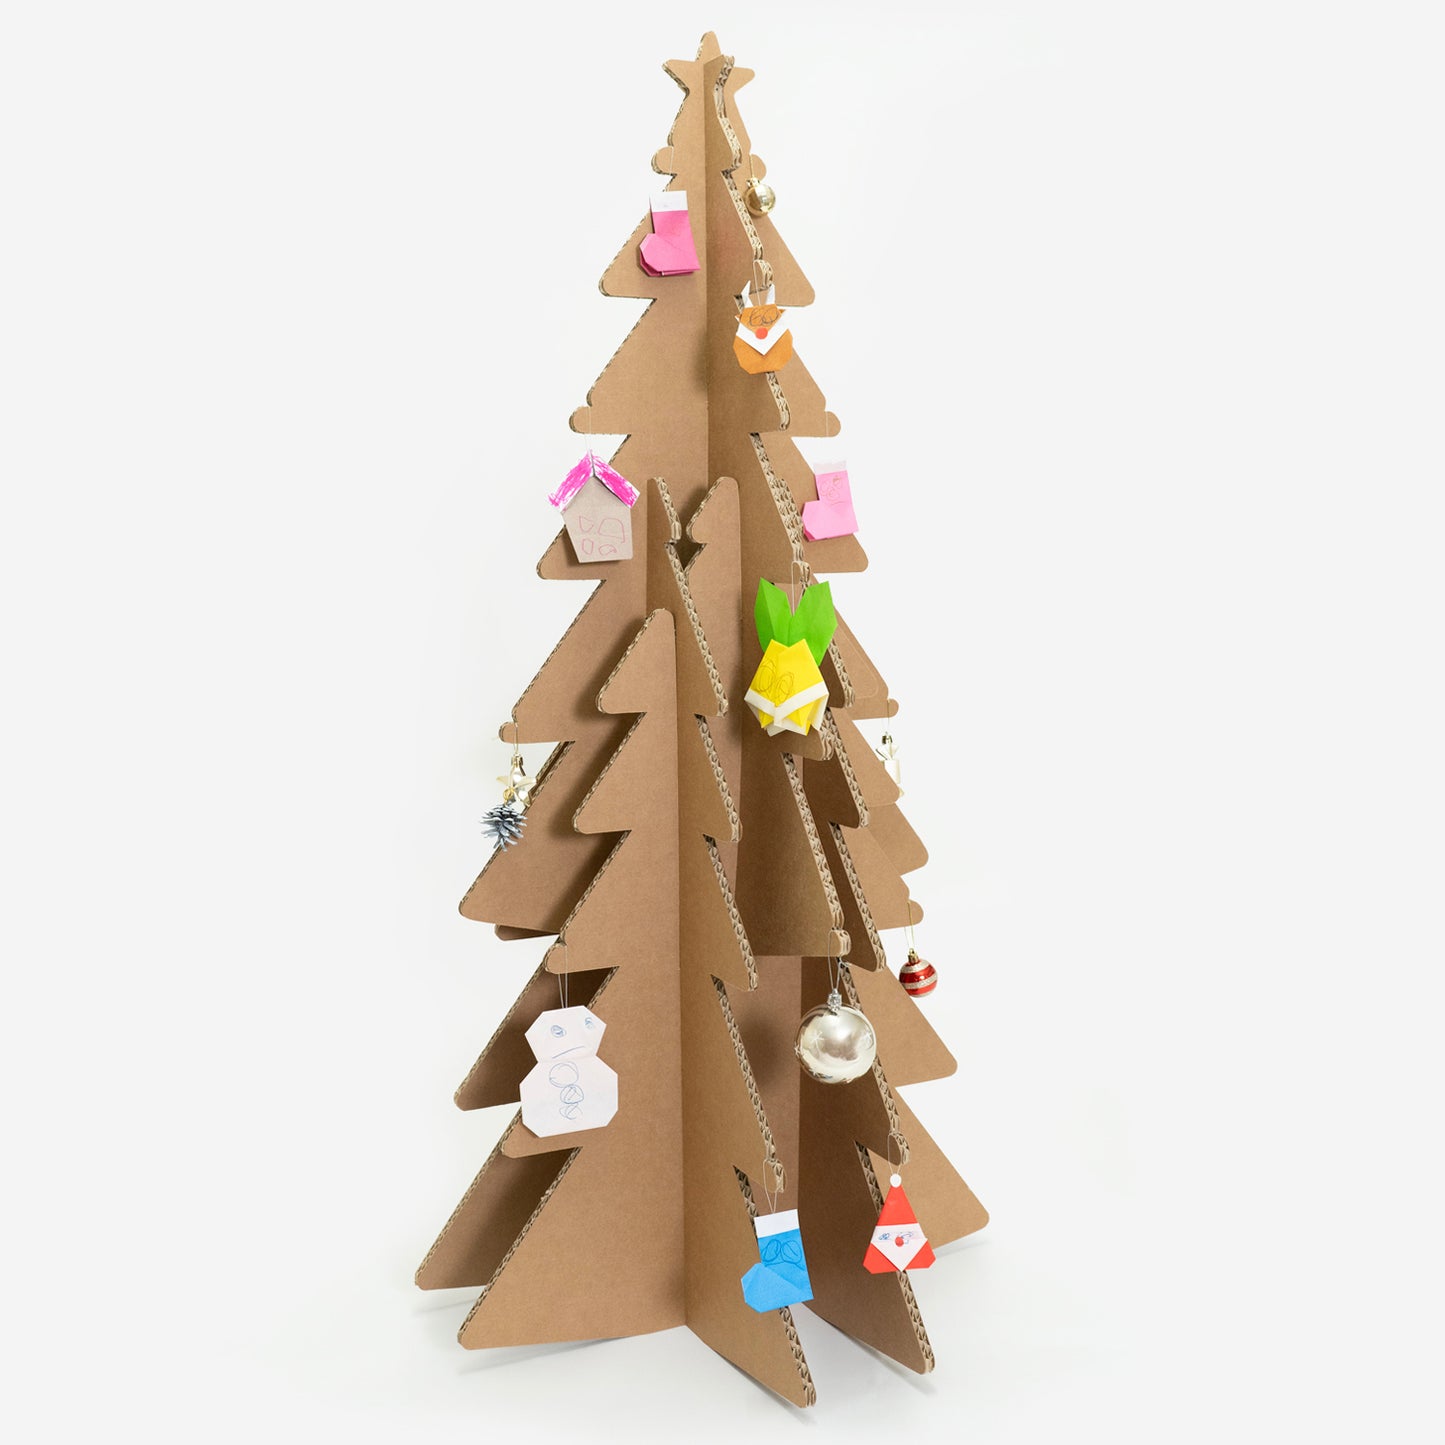 mCBクリスマスツリーには、キッズのアートをオーナメントとして飾ればさらにキュートに変身。折り紙製のオーナメントを飾ったり、直接お絵描きしたり。シールを貼ってデコレーションすることも可能です。